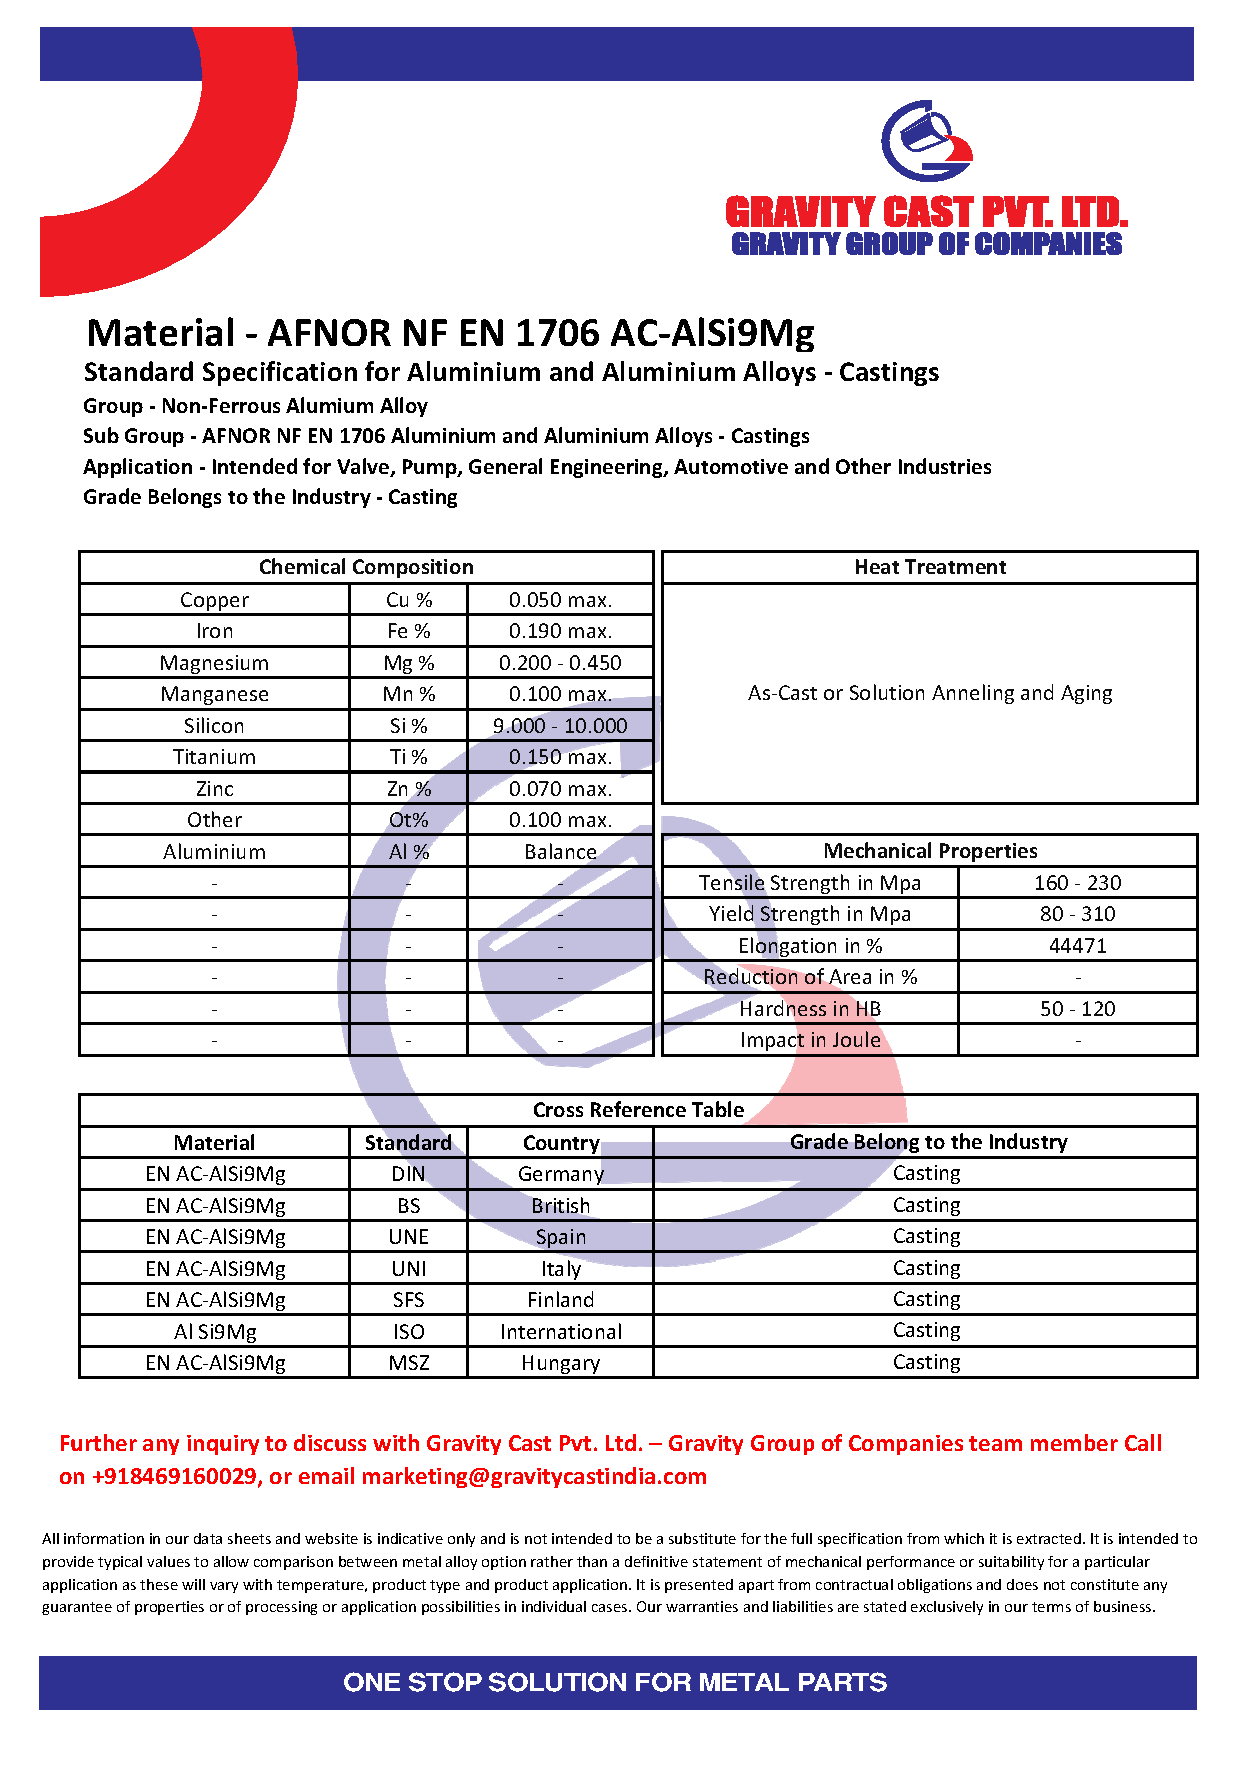 AFNOR NF EN 1706 AC-AlSi9Mg.pdf